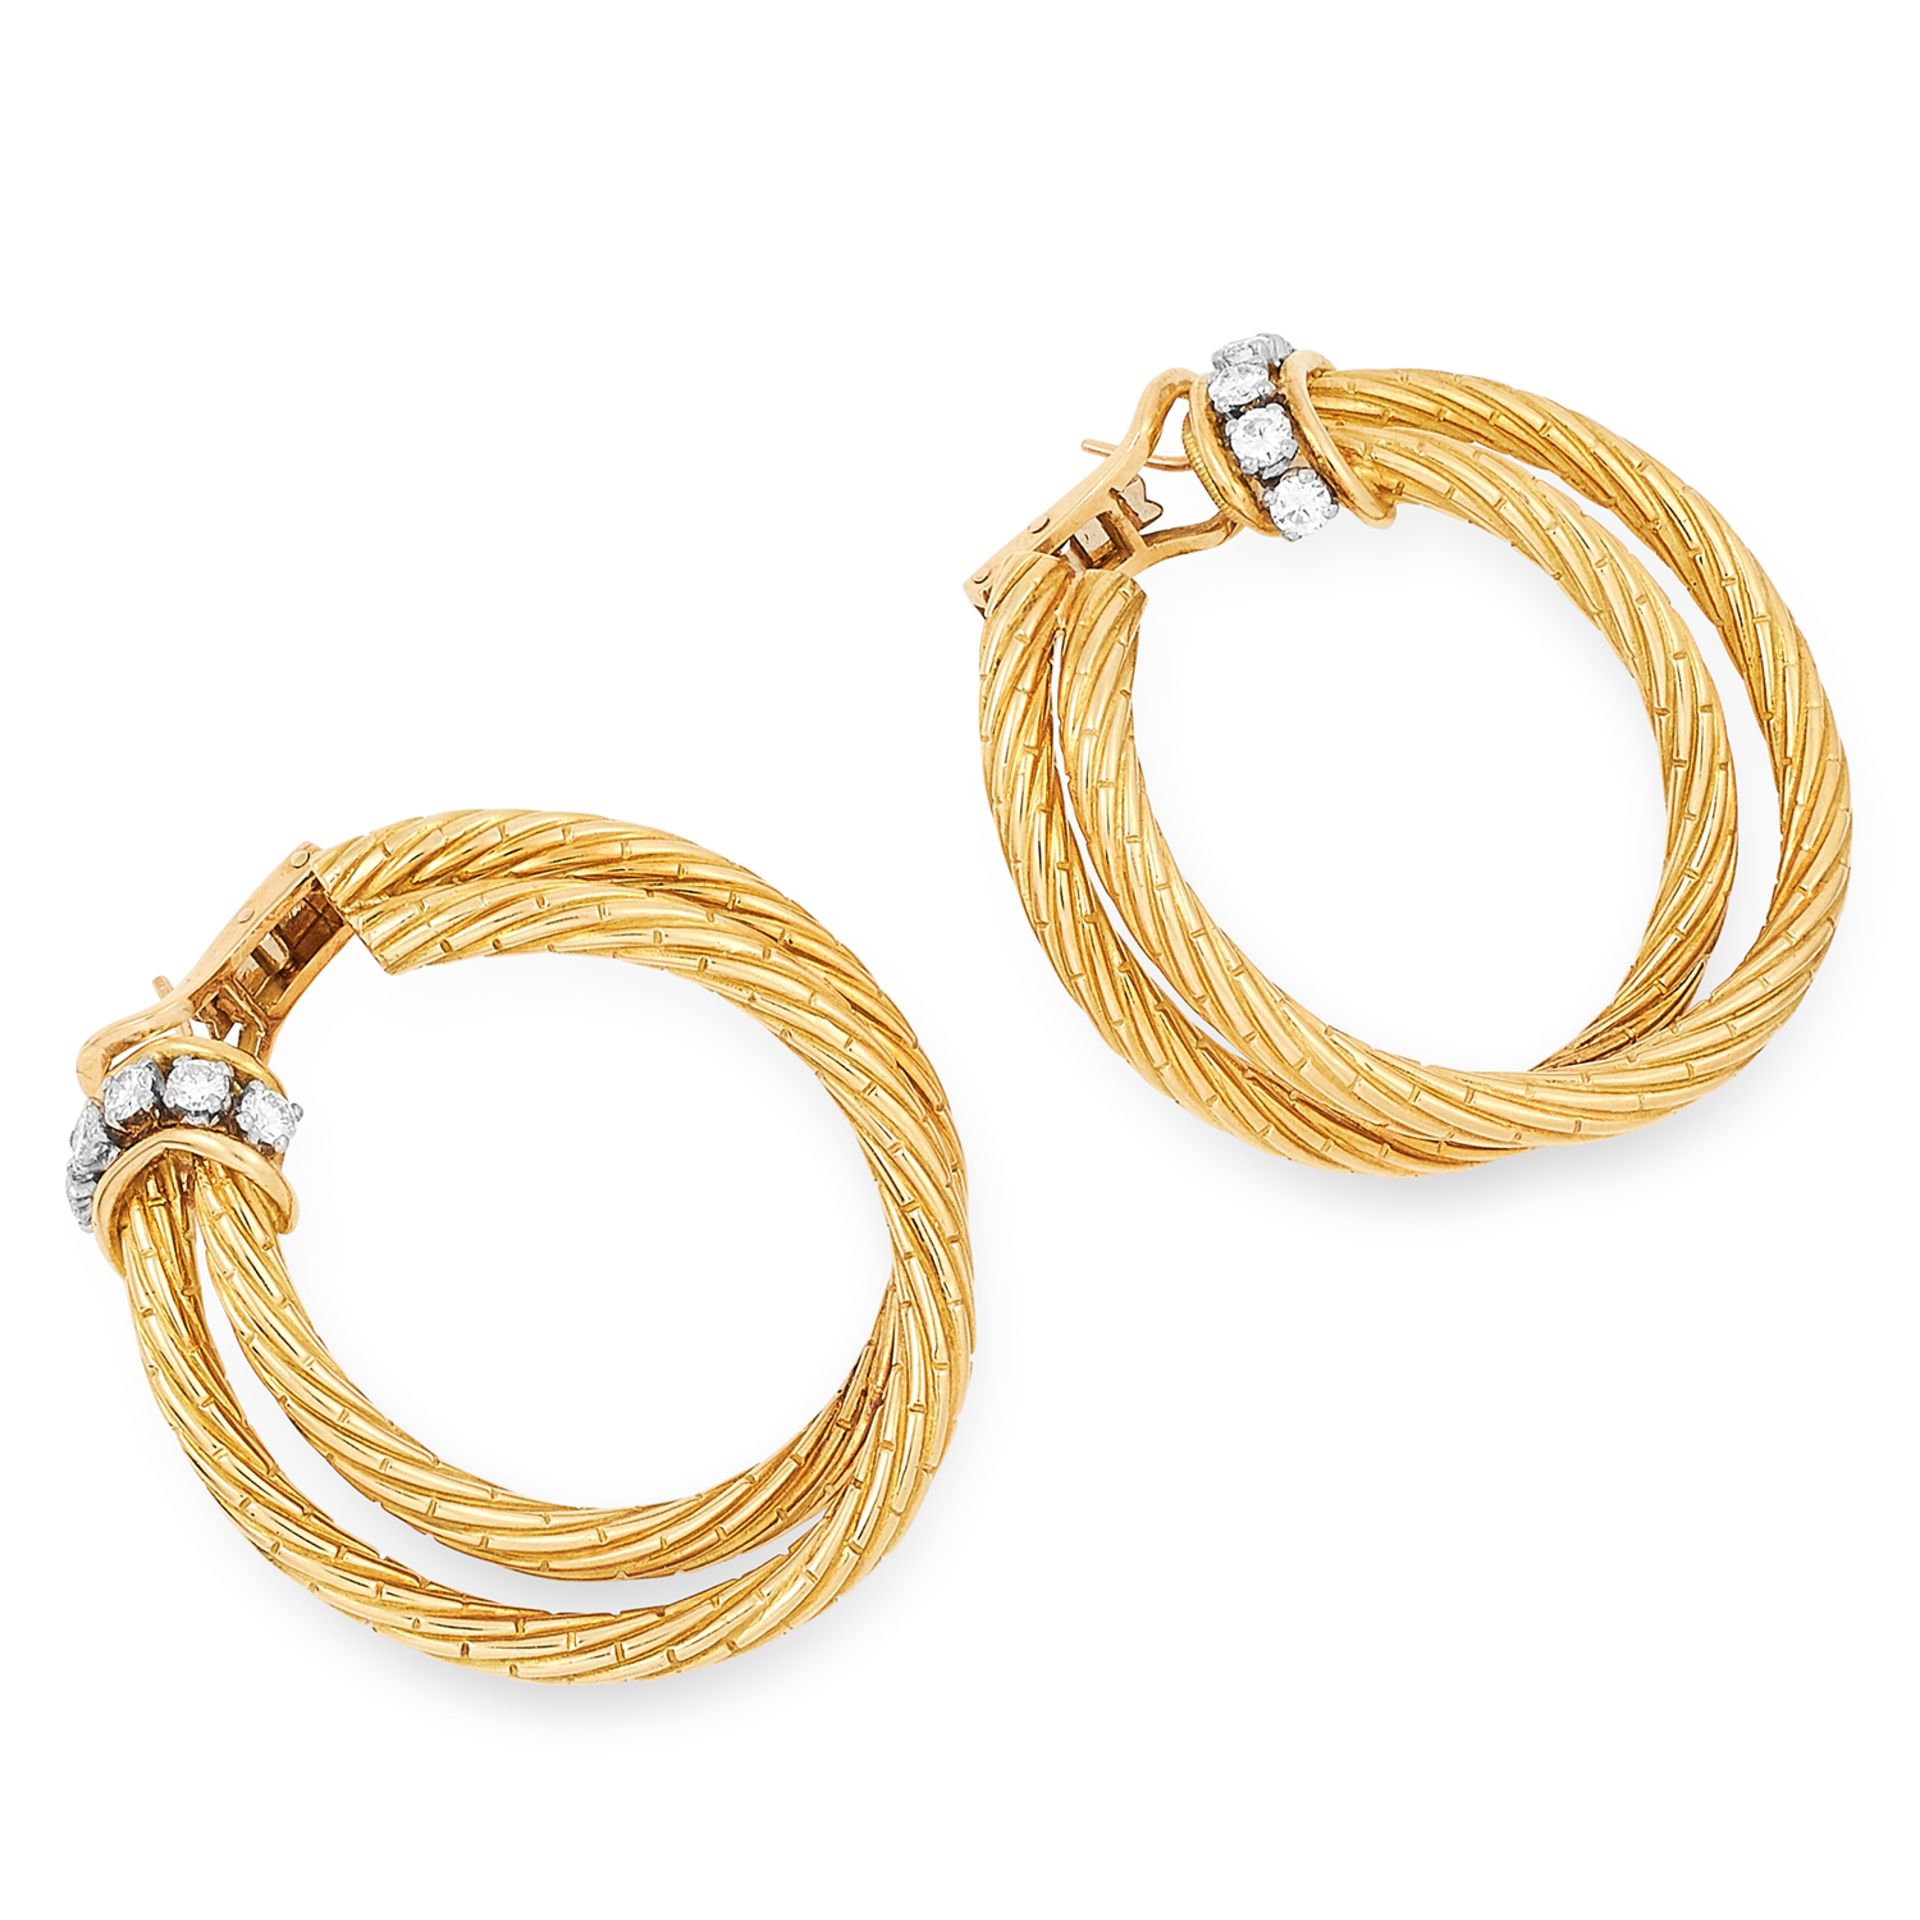 DIAMOND ROPE HOOP EARRINGS, VAN CLEEF & ARPELS designed as twisted ropes and set with 1.00 carat